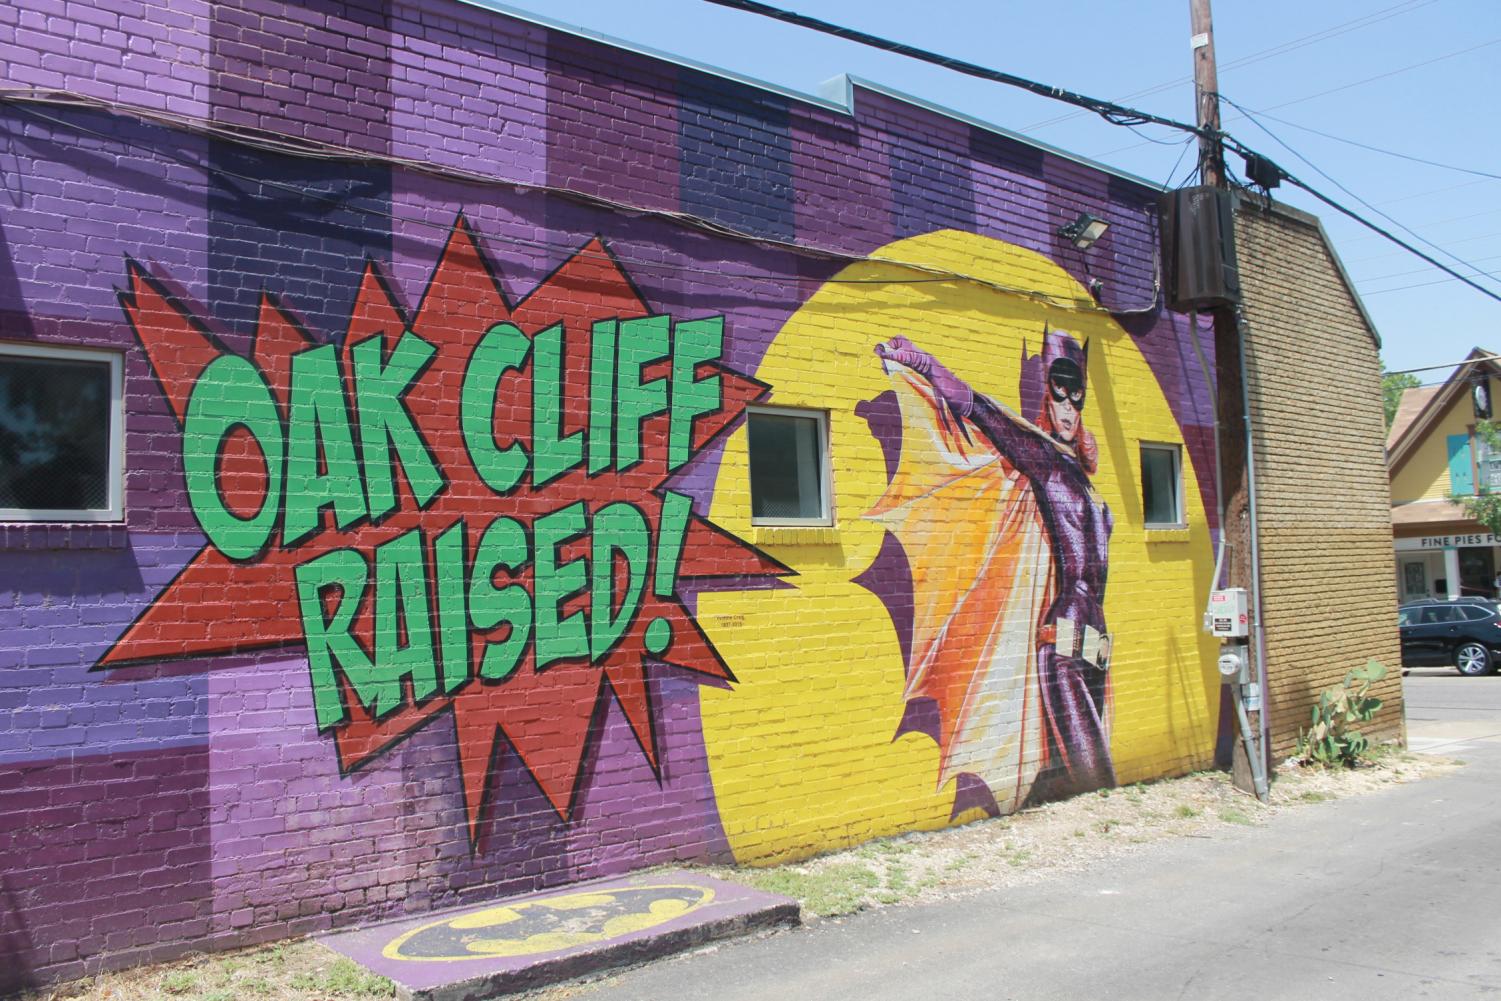 Bispo Mural Arts District De Batgirl, Dallas, Texas Fotografia